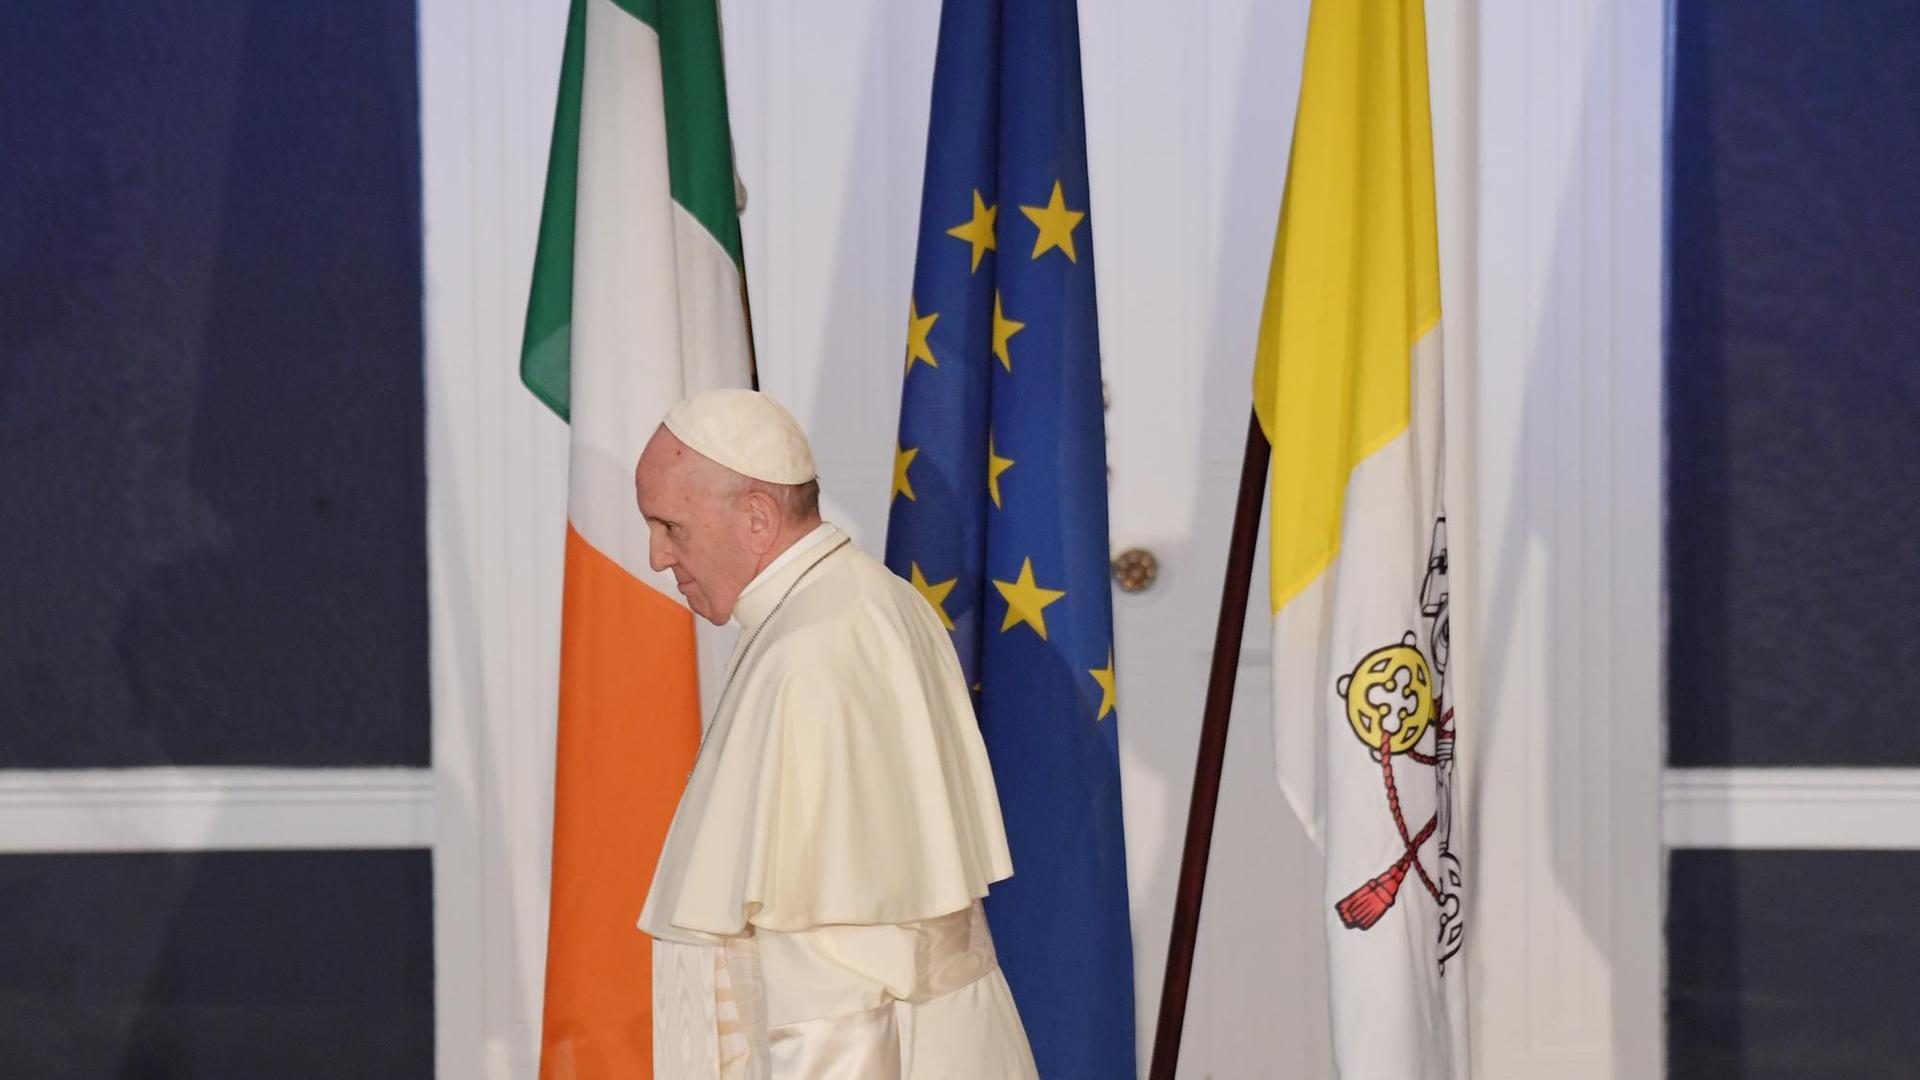 Papst Franziskus geht während seiner ersten Rede im irischen Dublin an drei Flaggen vorüber, der irischen (links), der europäischen (Mitte) und der des Vatikan (rechts).